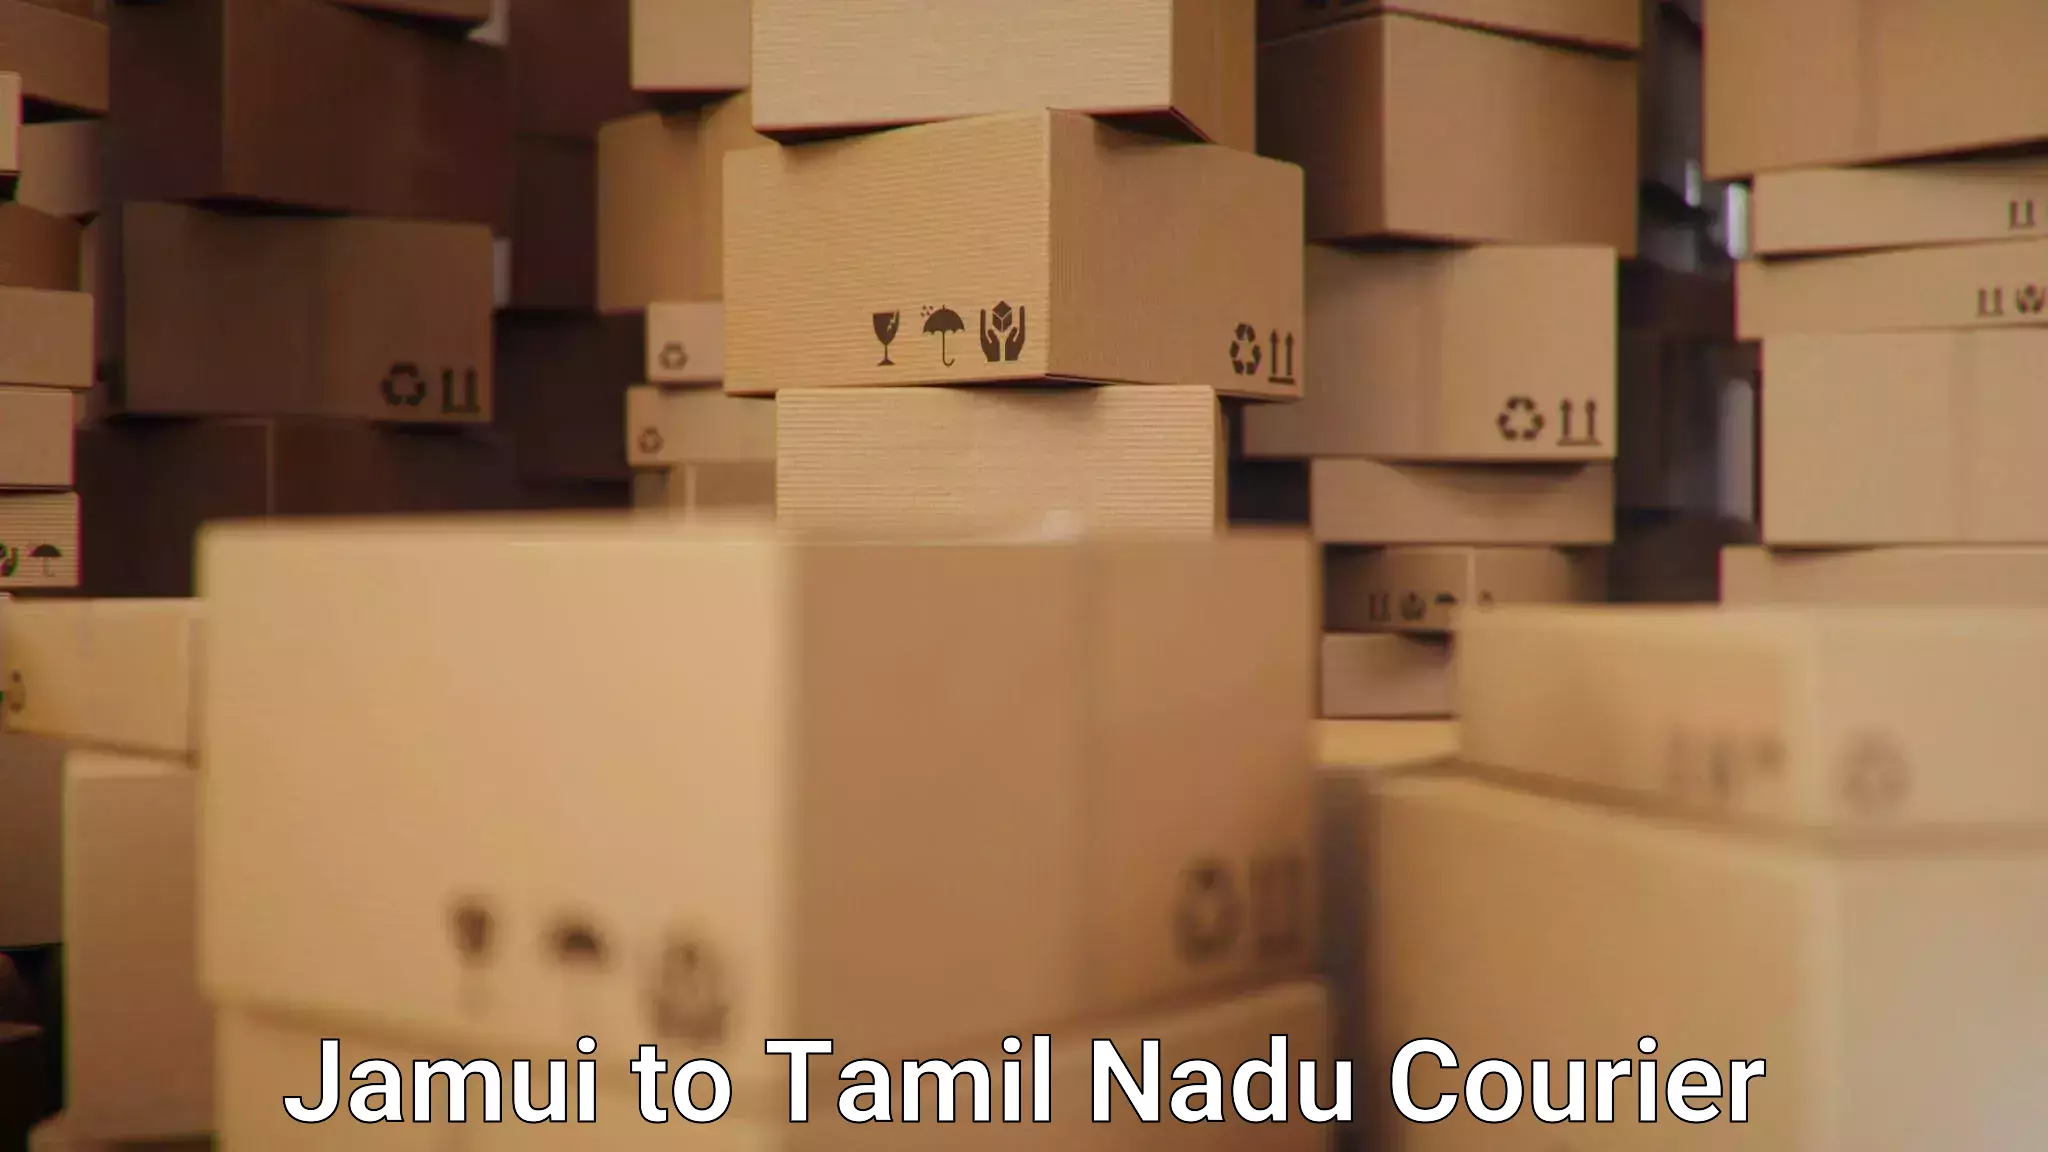 Urban courier service Jamui to Tiruturaipundi